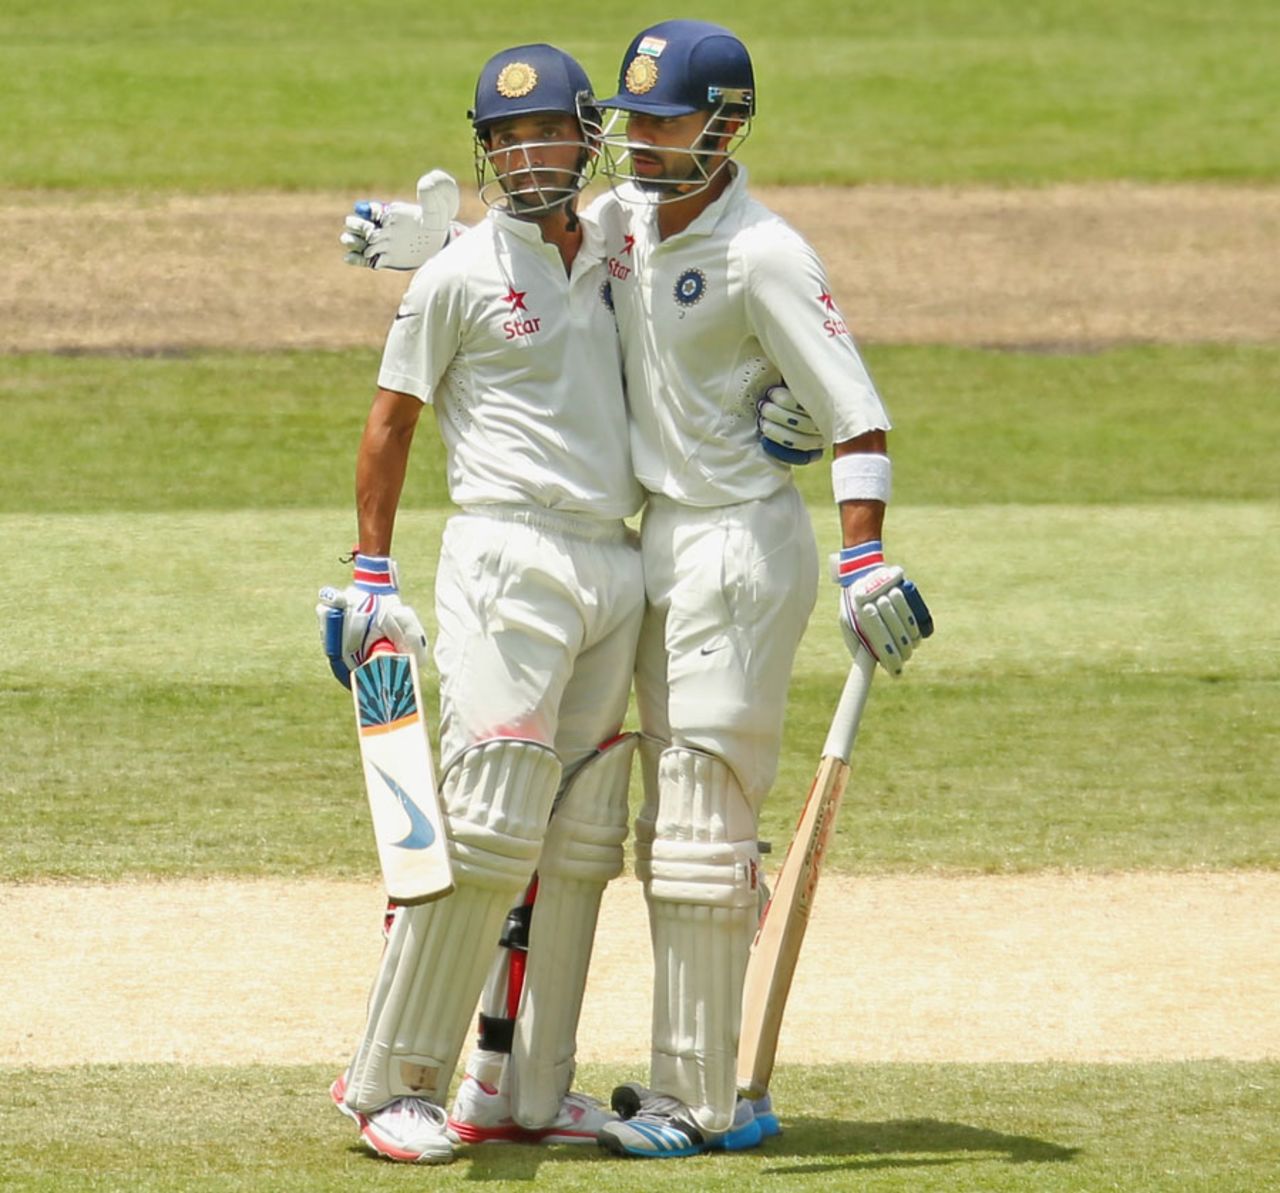 Ajinkya Rahane and Virat Kohli led India's fight, Australia v India, 3rd Test, Melbourne, 3rd day, December 28, 2014